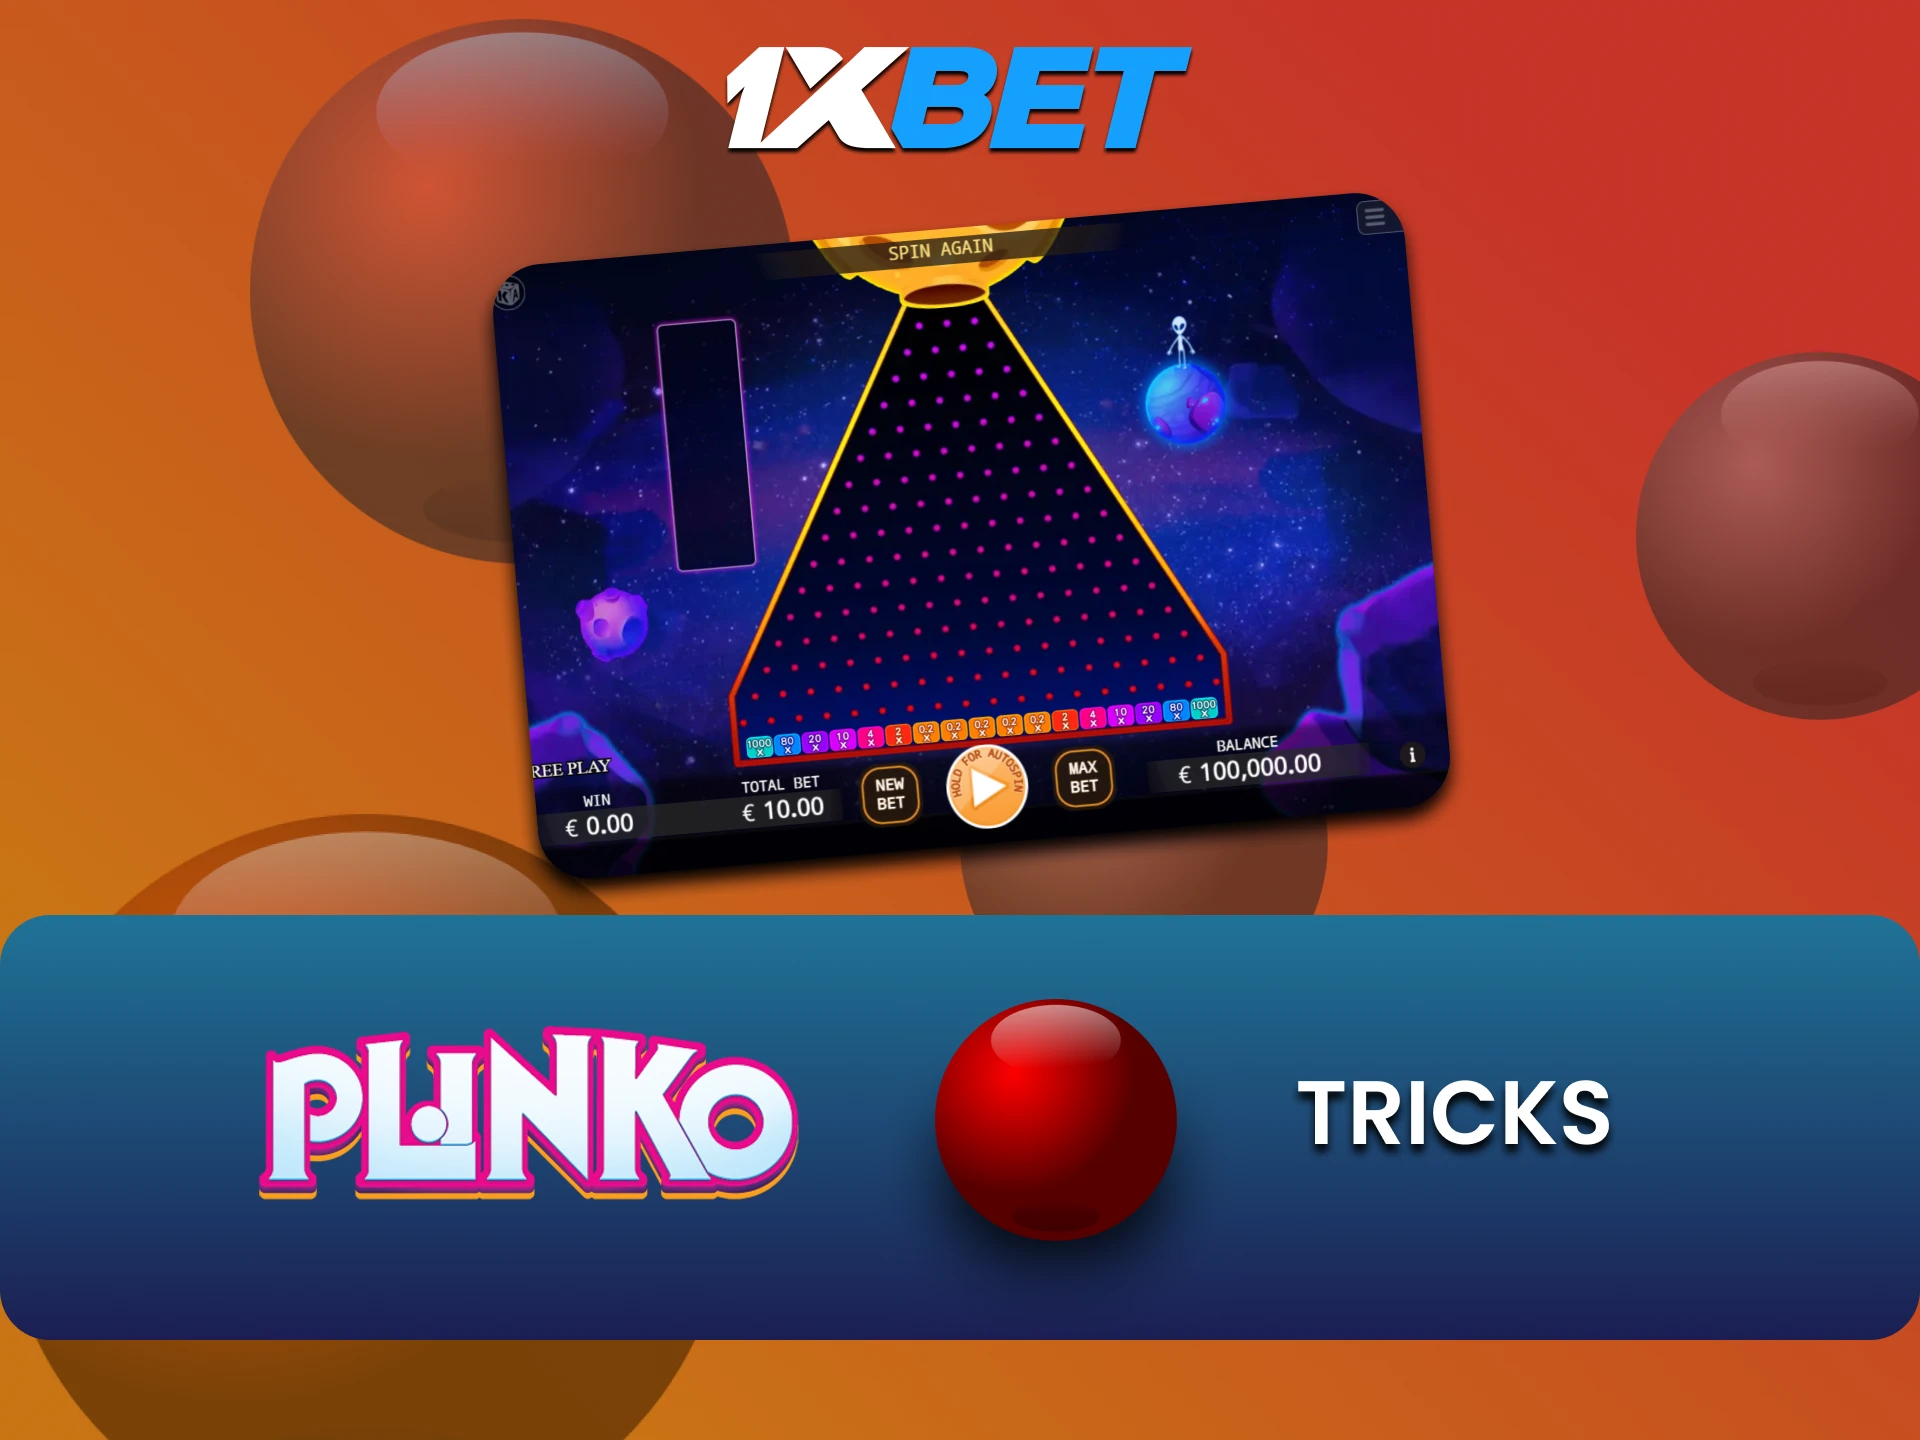 Learn possible tricks to win in Plinko on 1xbet.